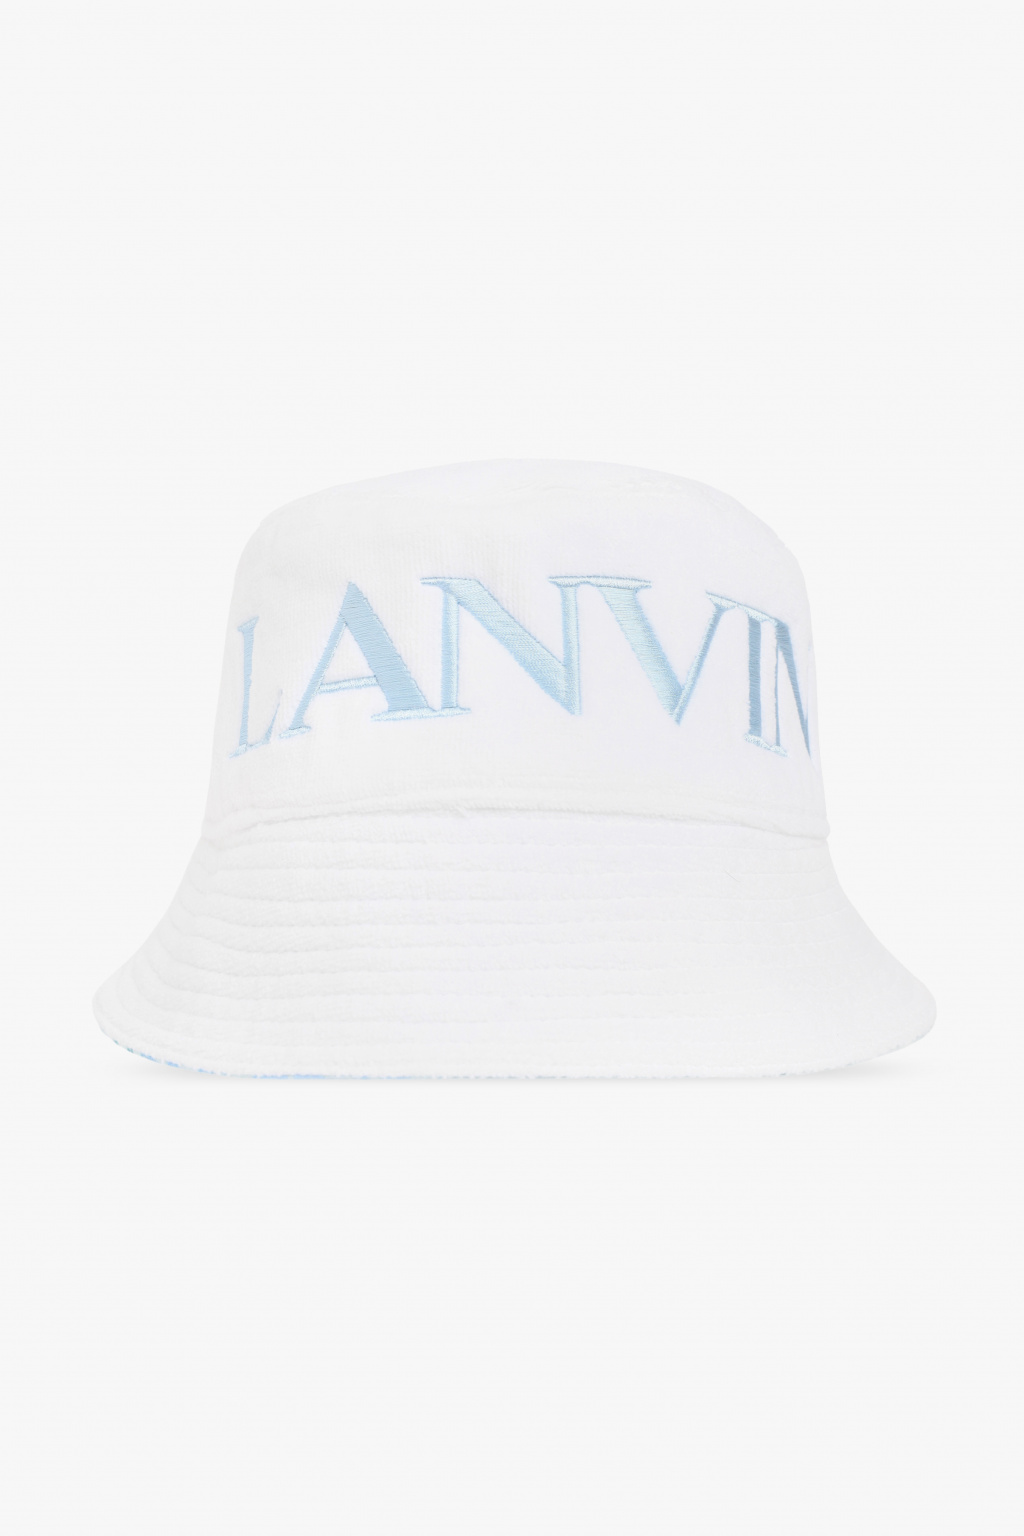 Lanvin Reversible bucket hat